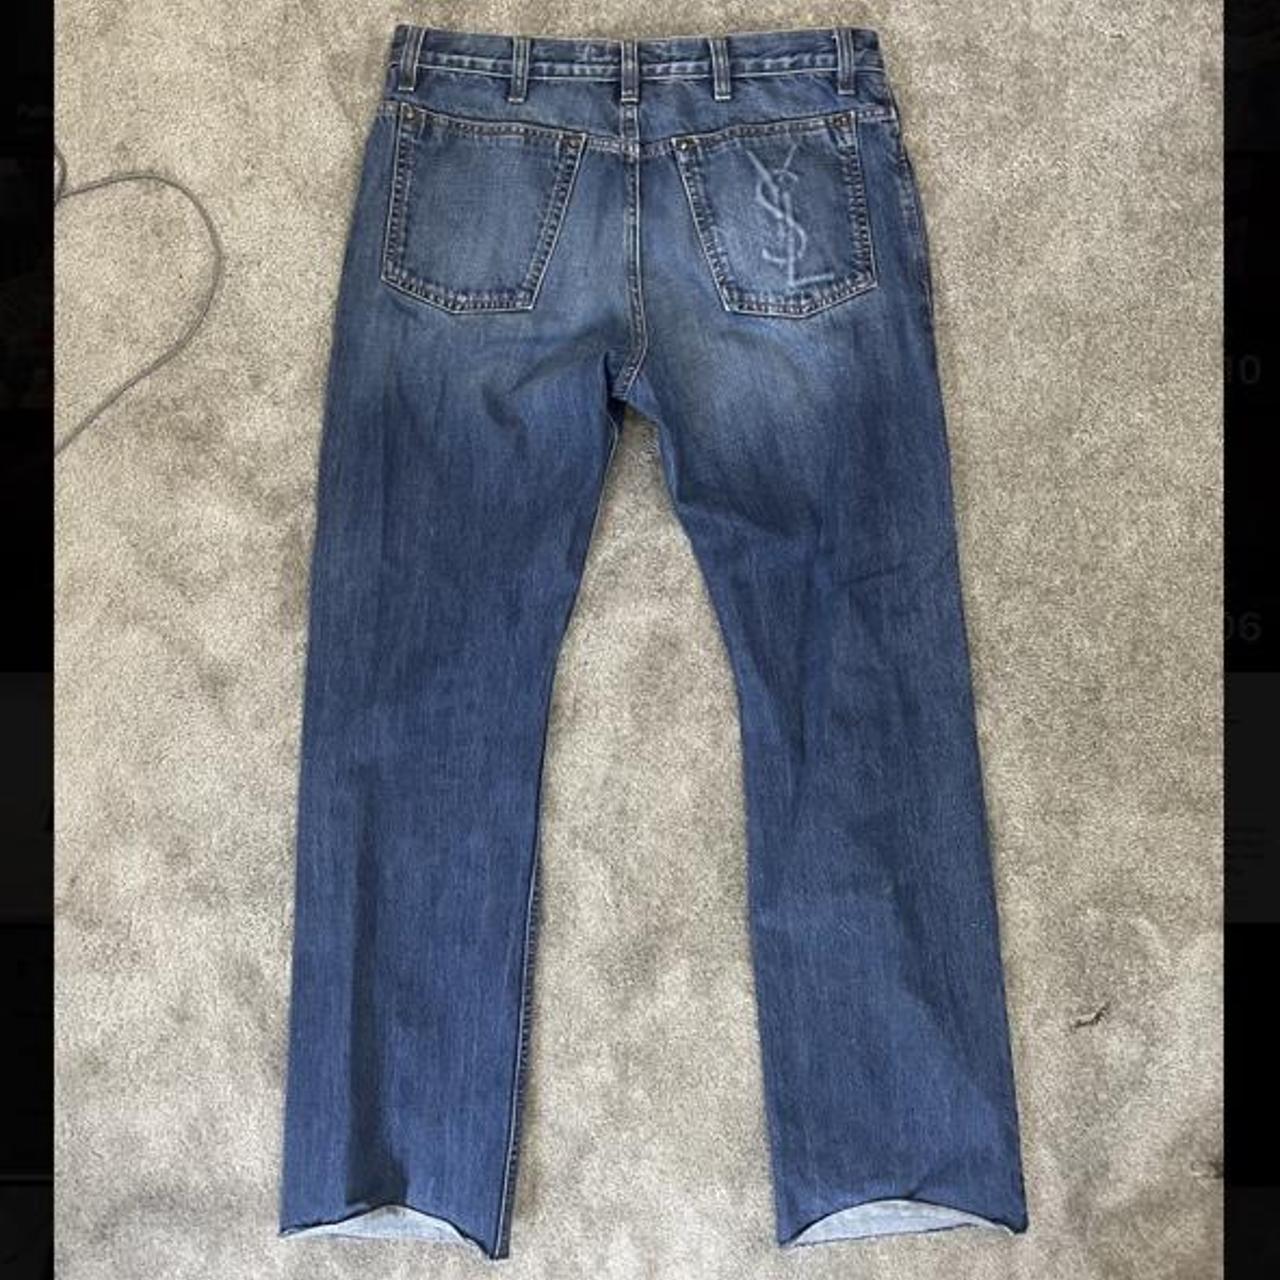 Yves Saint Laurent Men's Jeans | Depop